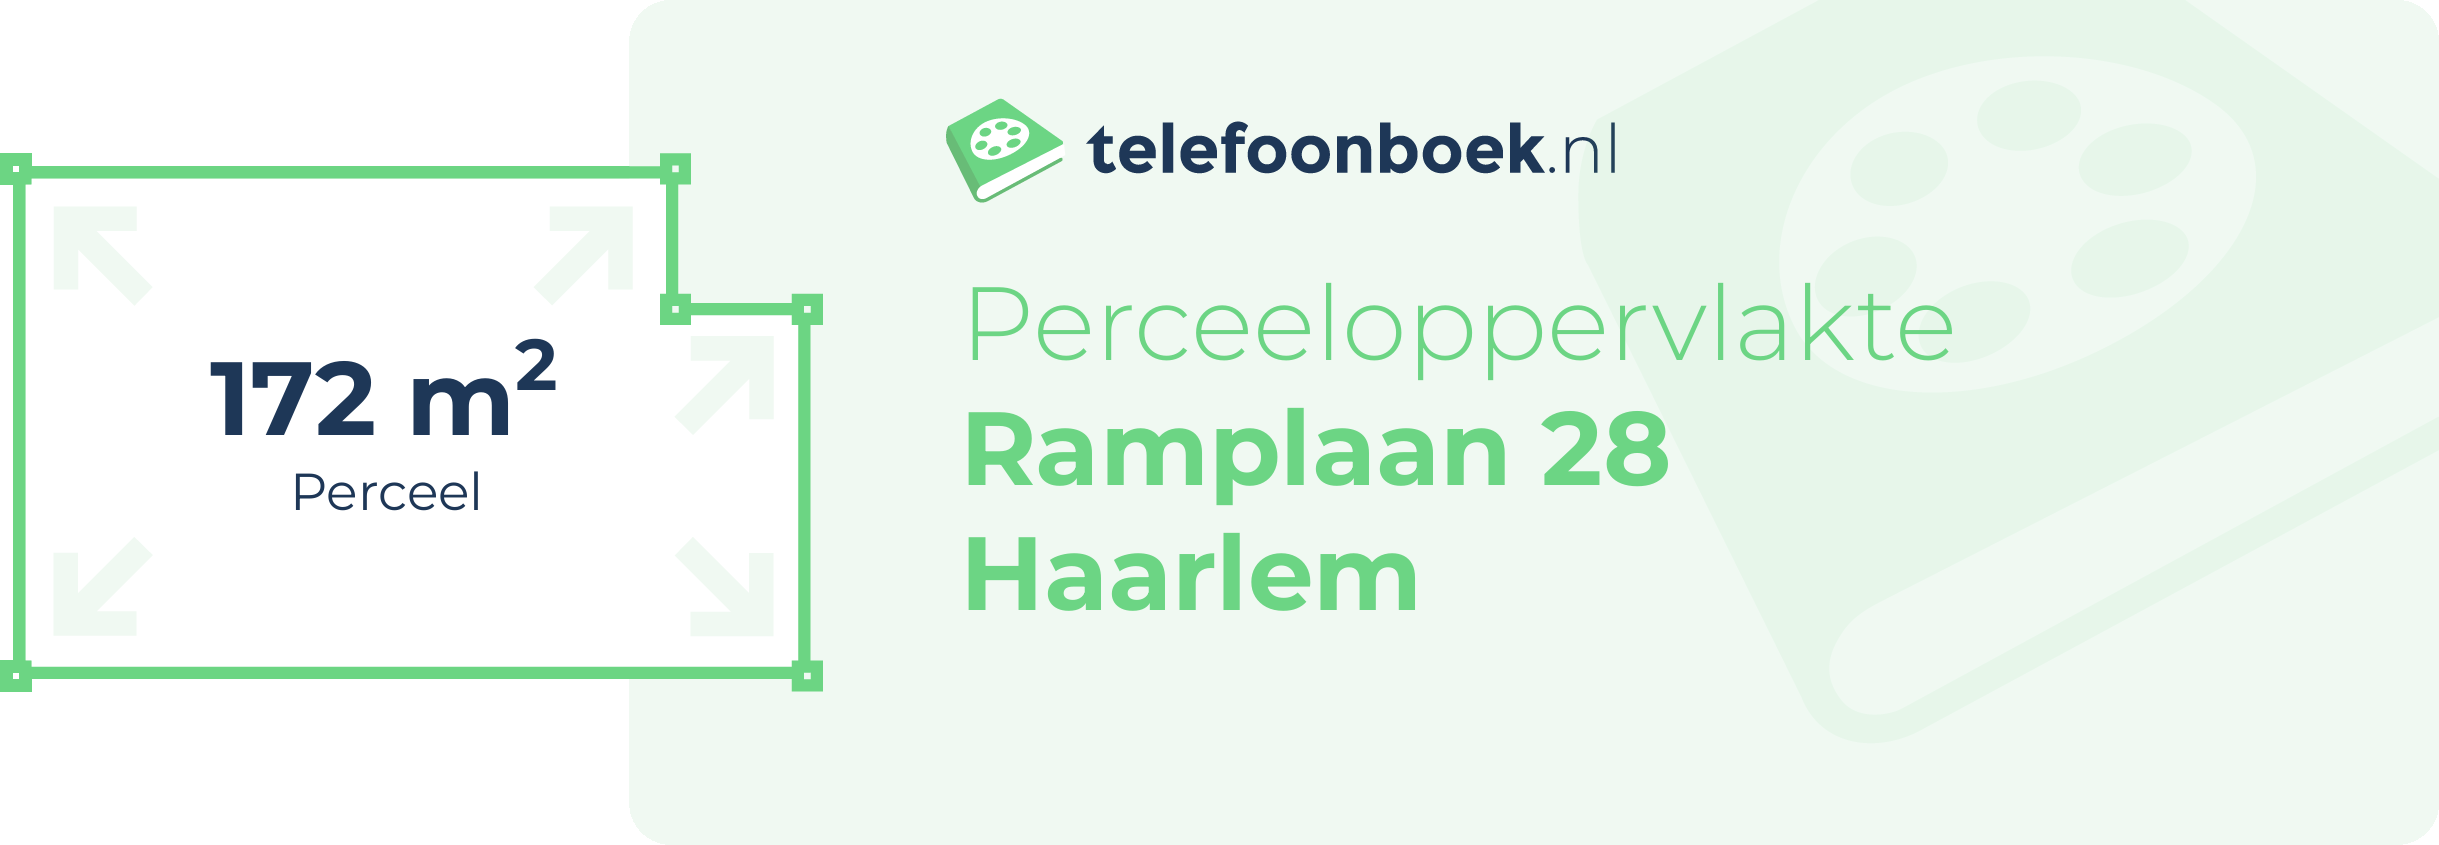 Perceeloppervlakte Ramplaan 28 Haarlem